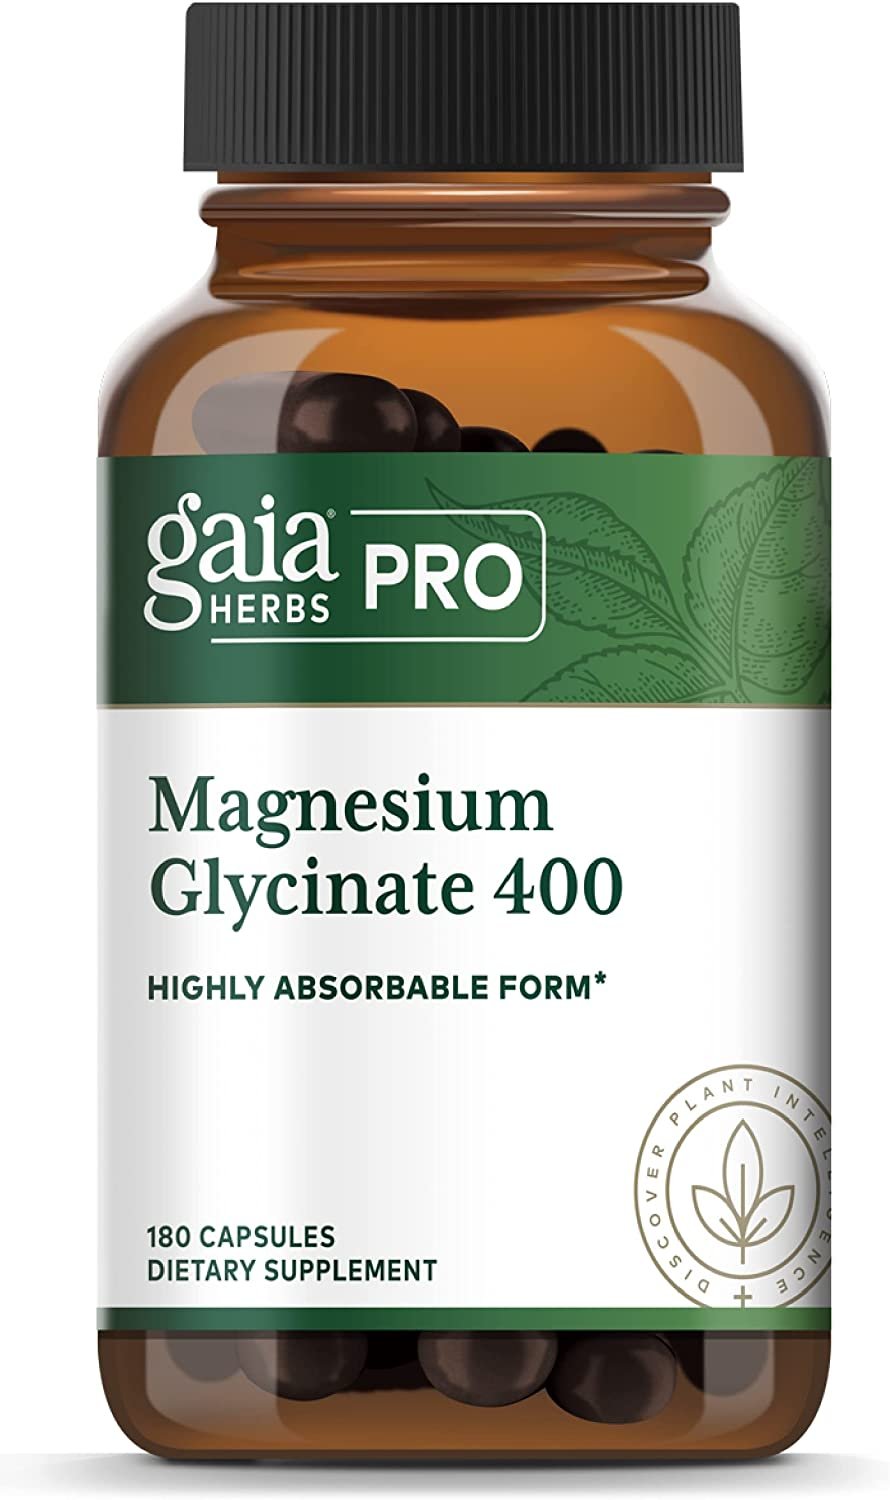 Gaia Herbs Pro Magnesium Glycinate